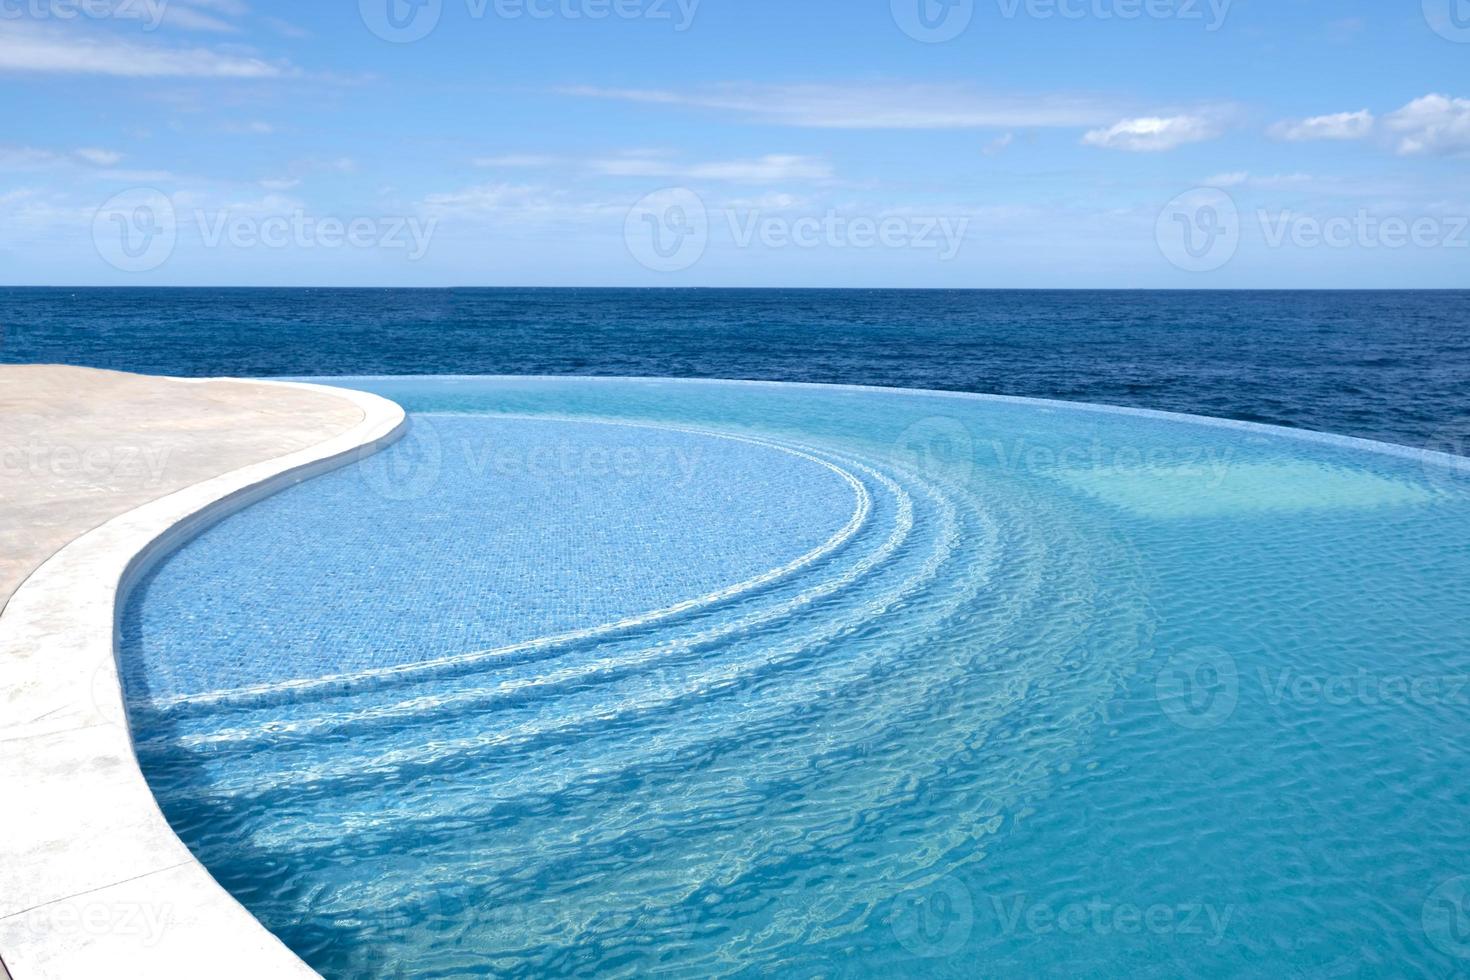 o vento faz a ondulação da água. piscina de água do mar com escadas para relaxar. superfície de água azul clara na piscina. férias de verão e conceito de descanso. padrão de fundo feito de azulejos de mosaico cerâmicos azuis. foto